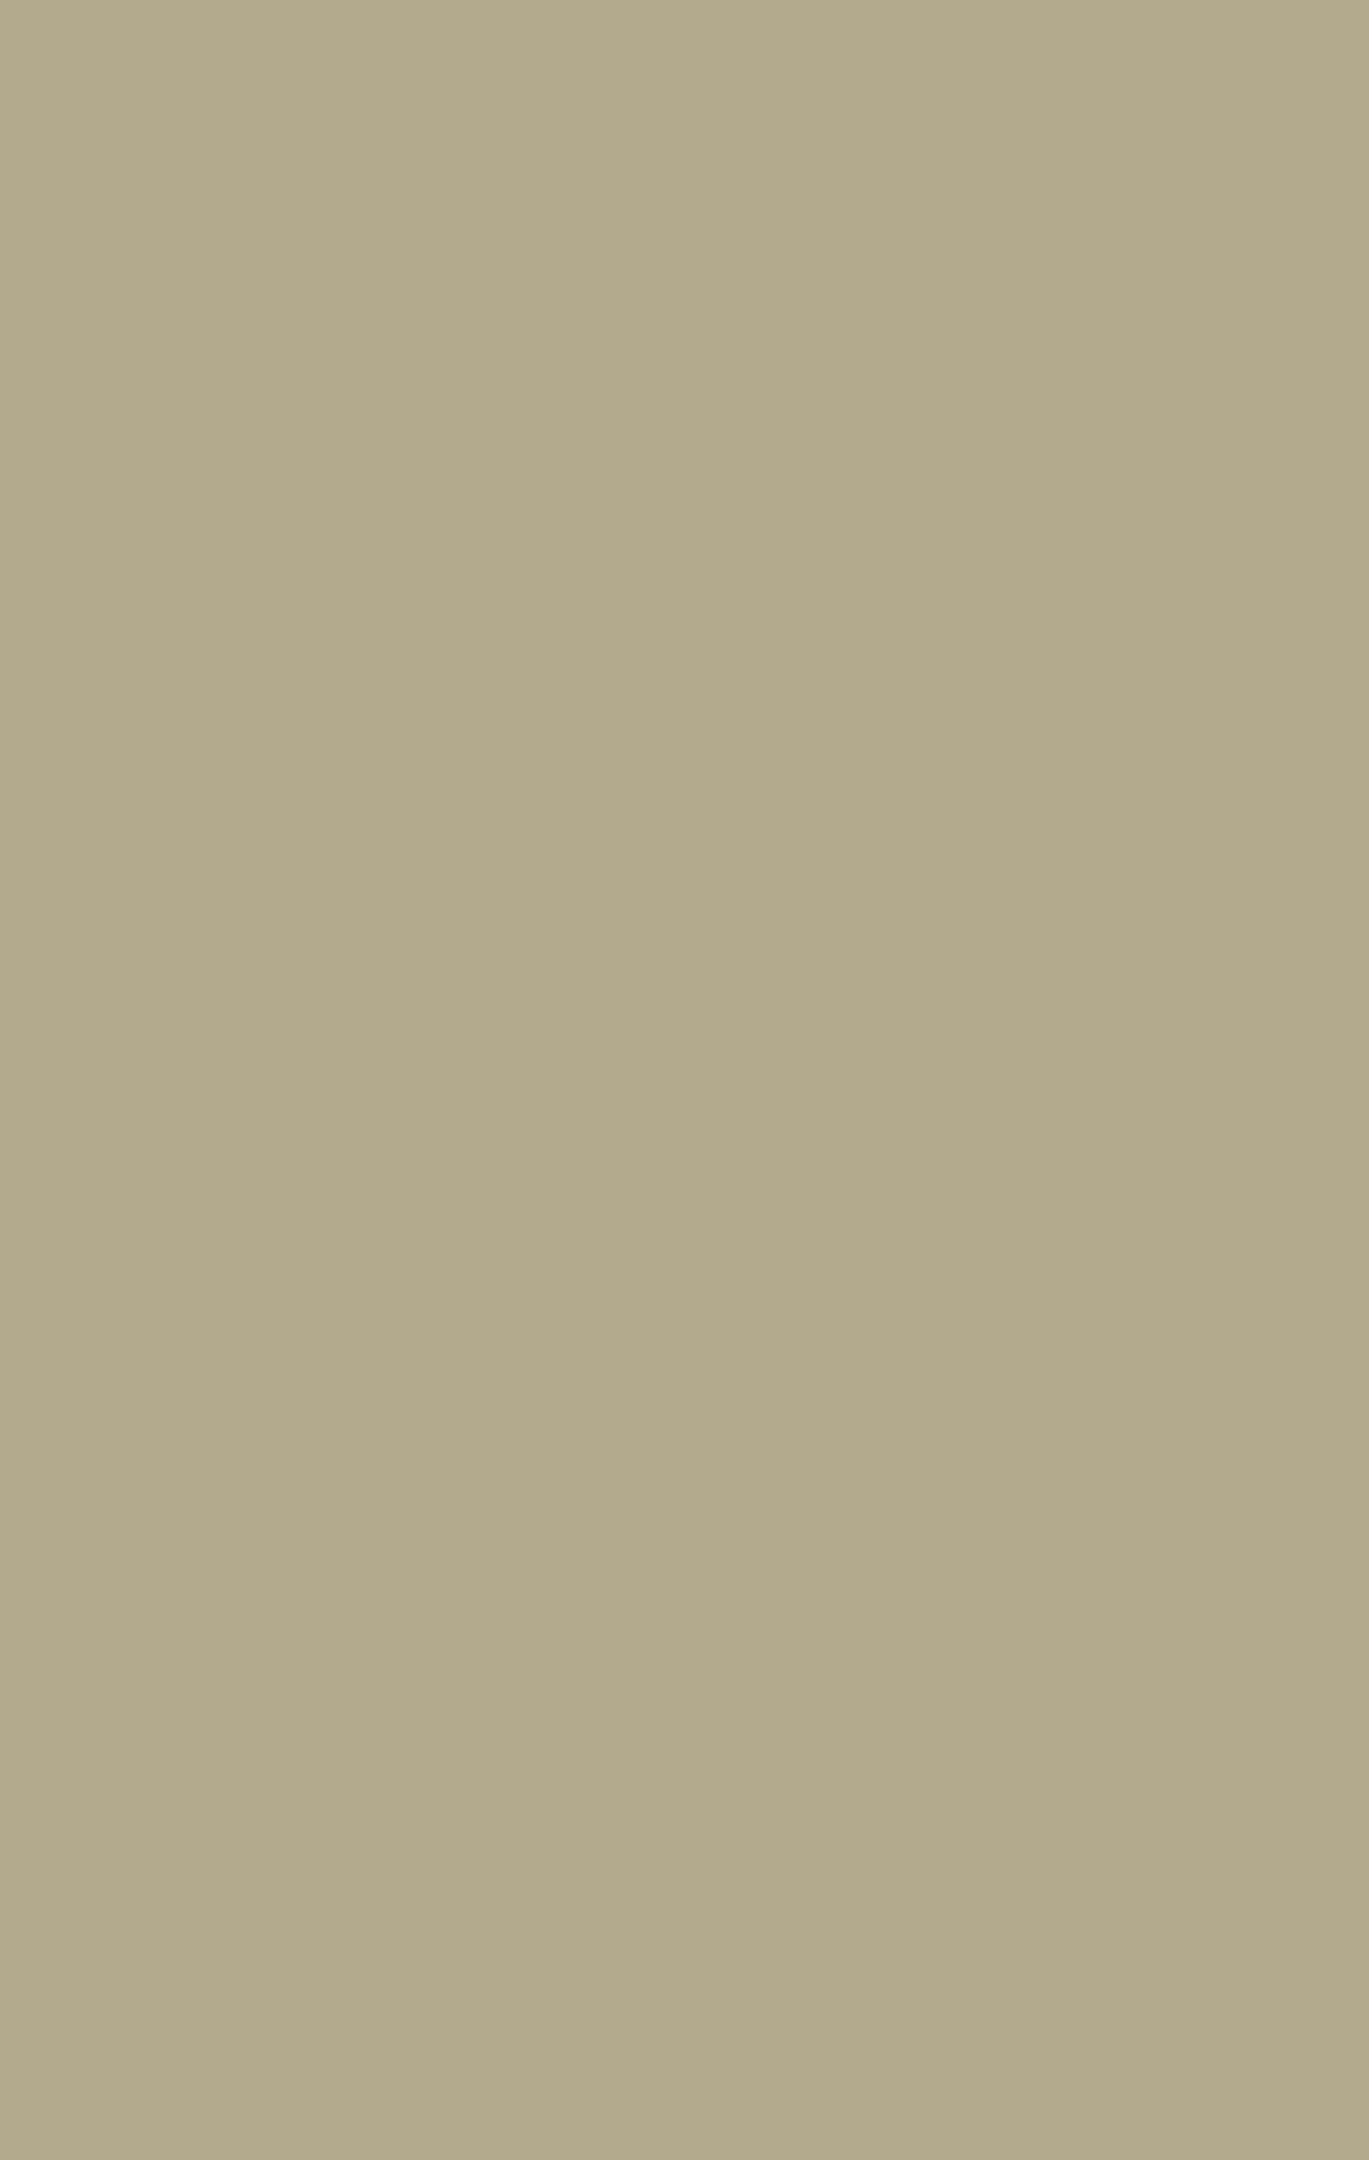 Роберт Фальк. Автопортрет. 1920-е. Киргизский государственный музей изобразительных искусств им. Г.Айтиева.